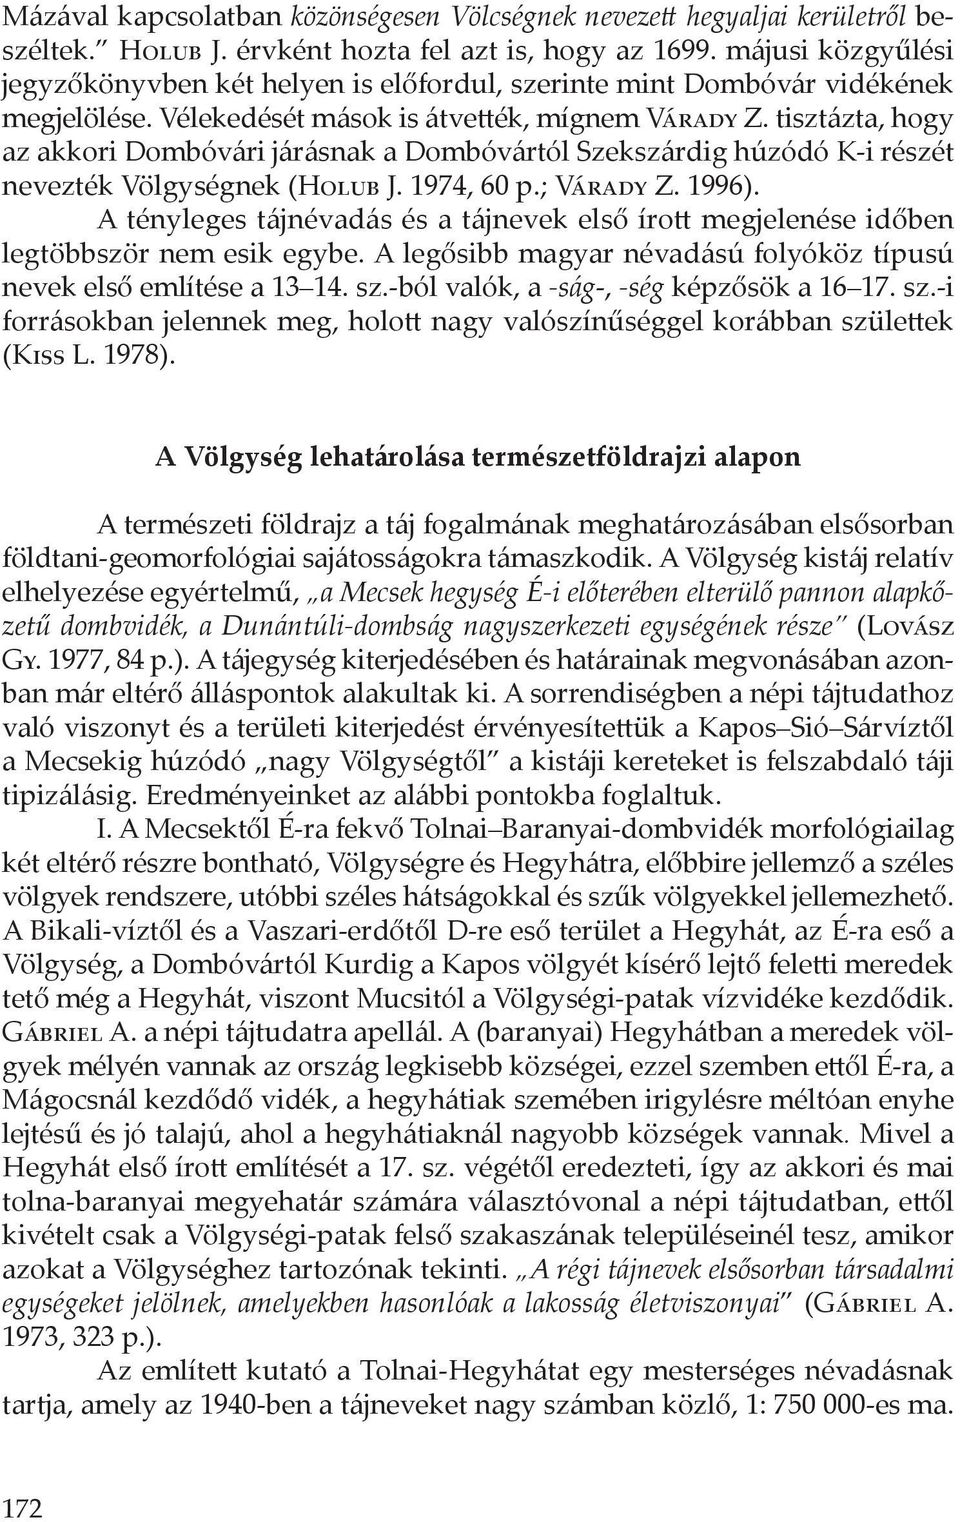 tisztázta, hogy az akkori Dombóvári járásnak a Dombóvártól Szekszárdig húzódó K-i részét nevezték Völgységnek (Holub J. 1974, 60 p.; Várady Z. 1996).